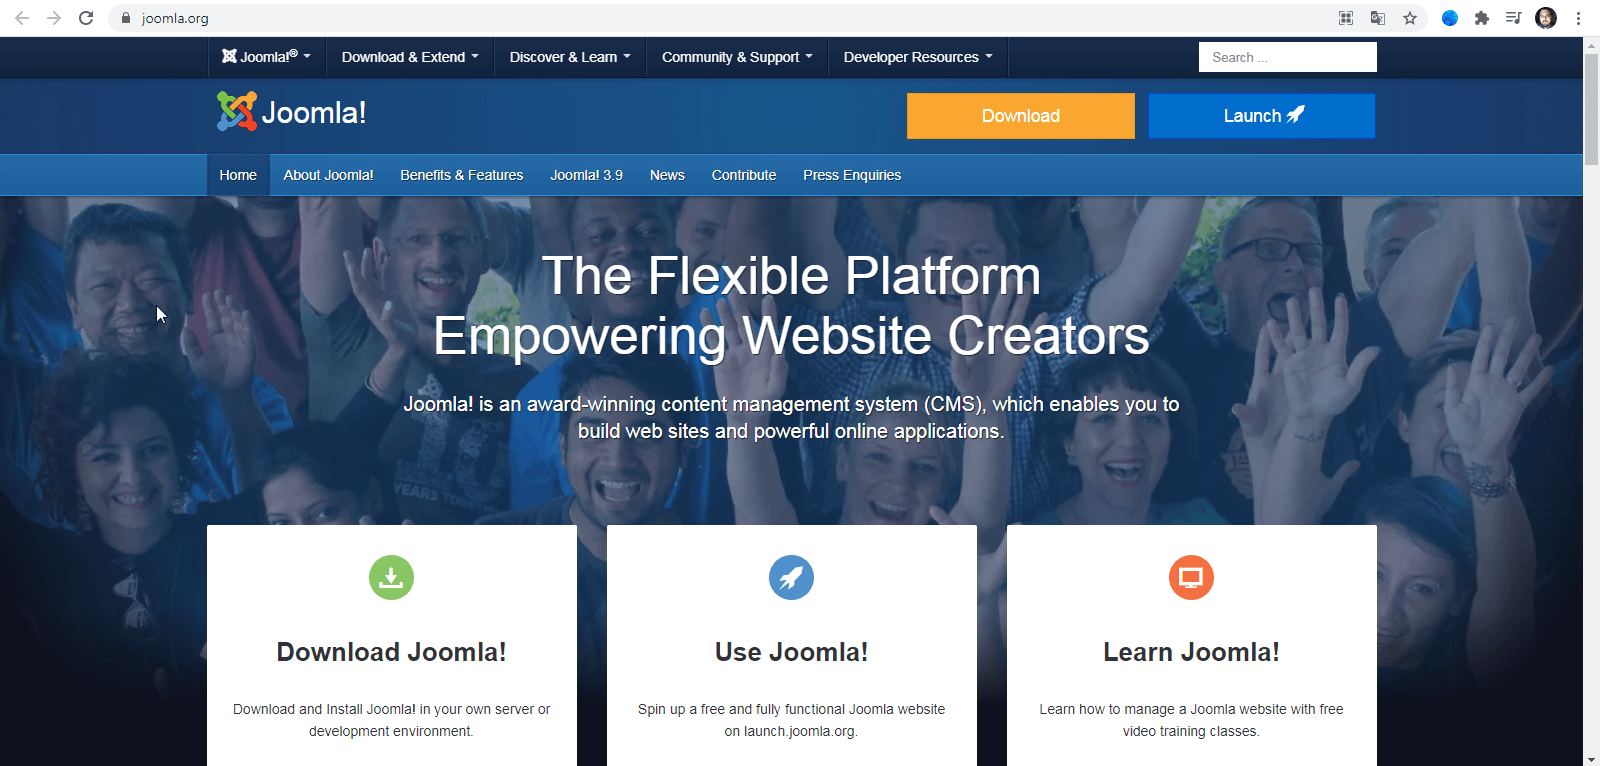 Official Joomla website.